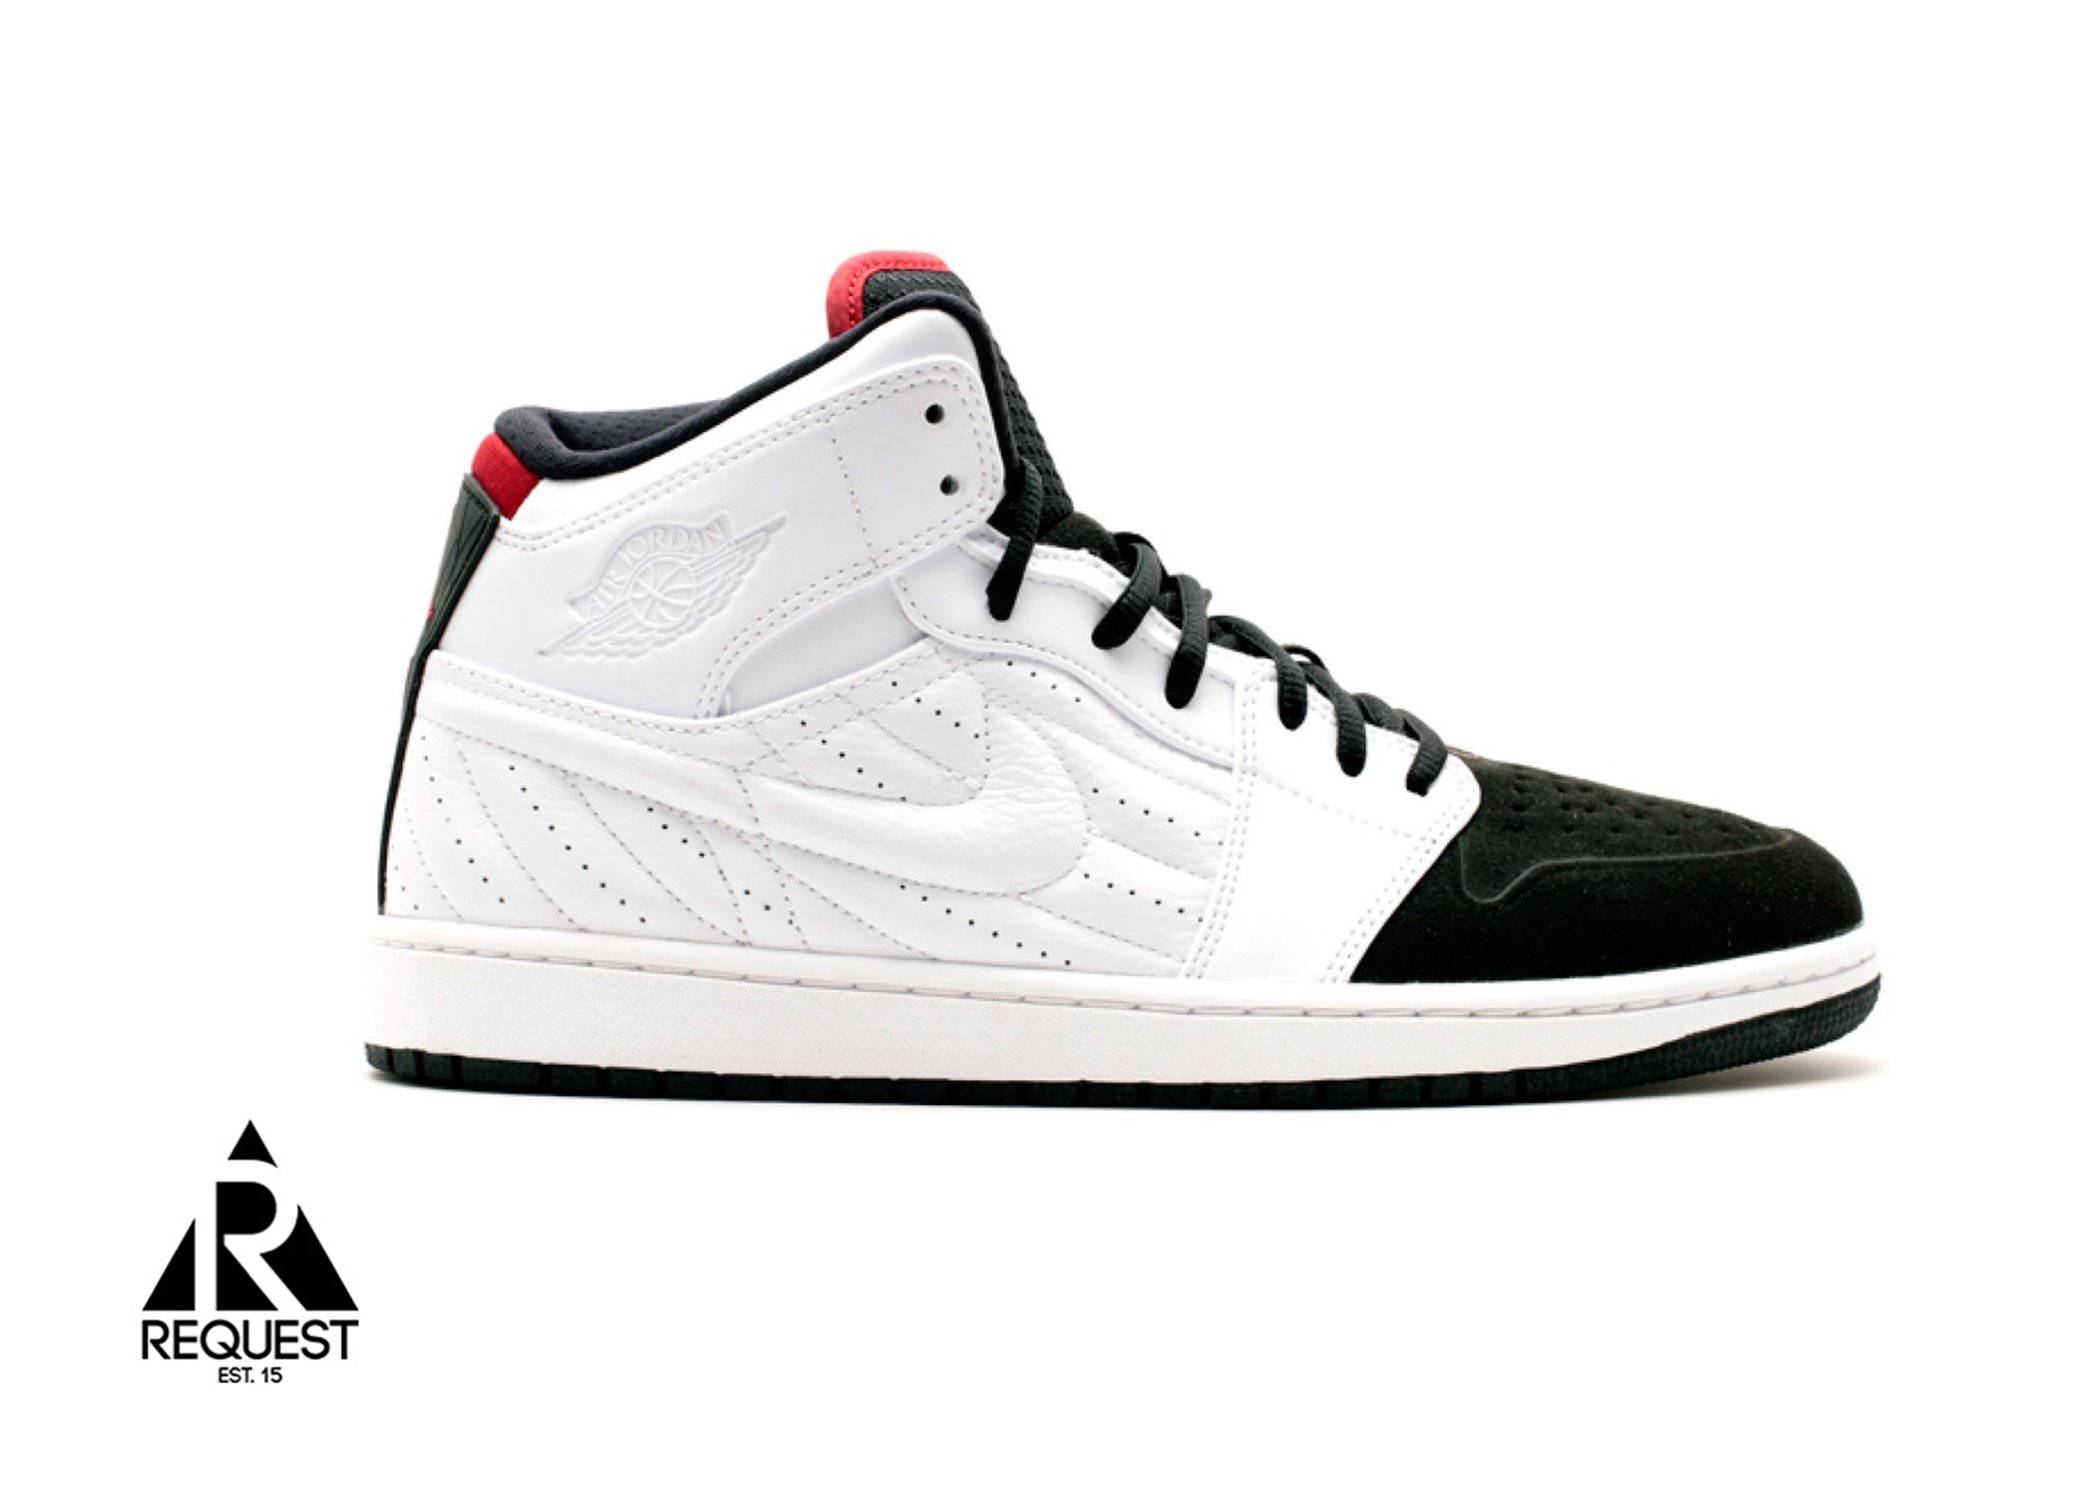 Air Jordan 1 Retro 99 “Black Toe”